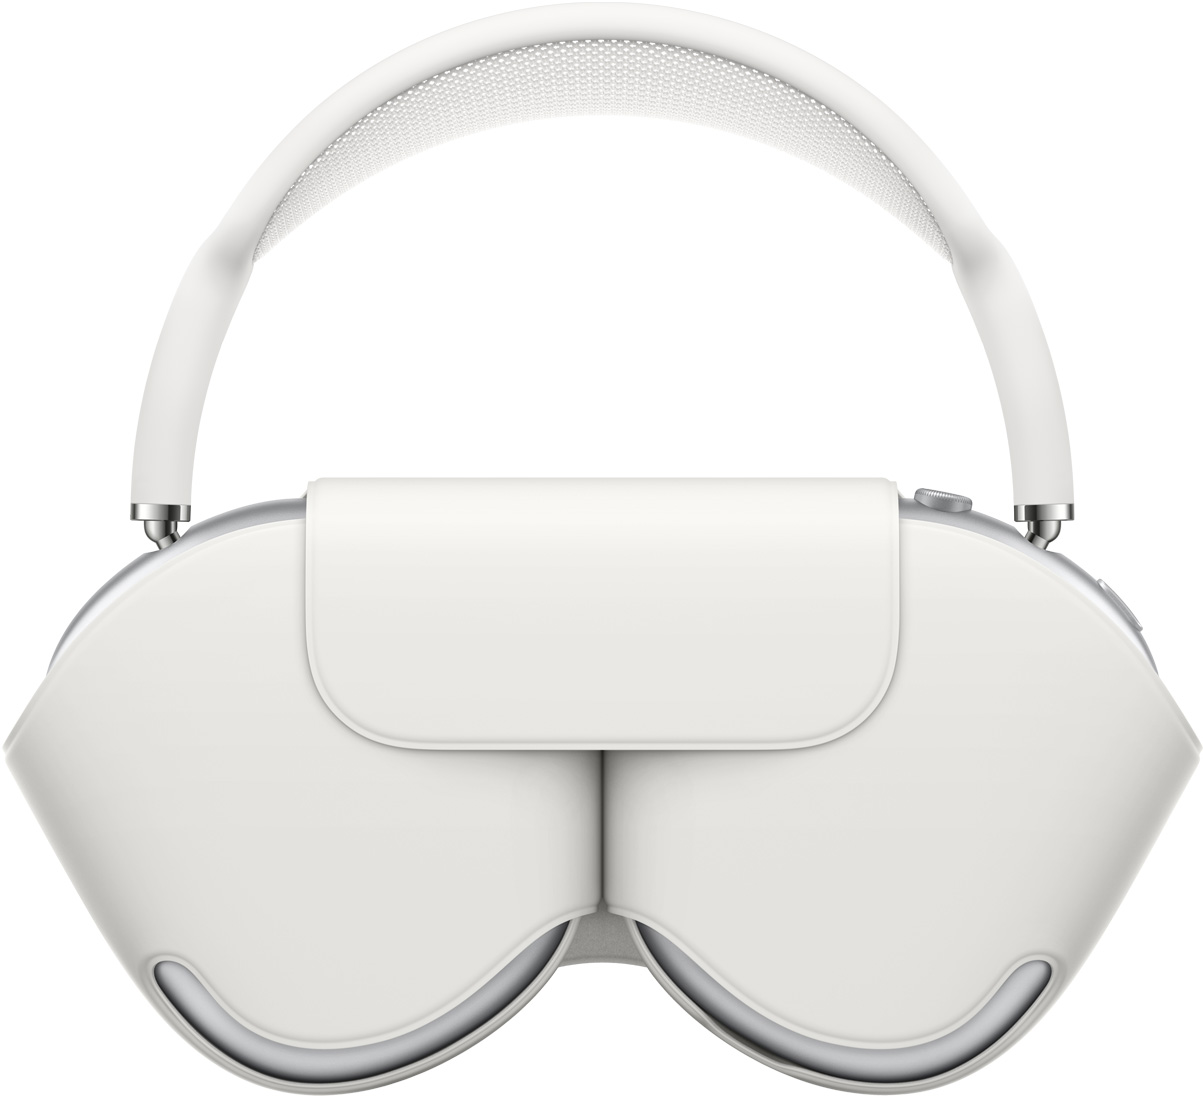 Slušalice AirPods Max u srebrnoj boji s usklađenom kutijicom Smart Case čija je namjena zaštiti slušalice, dok obloga ostaje iznad kutijice i kada su slušalice pohranjene.